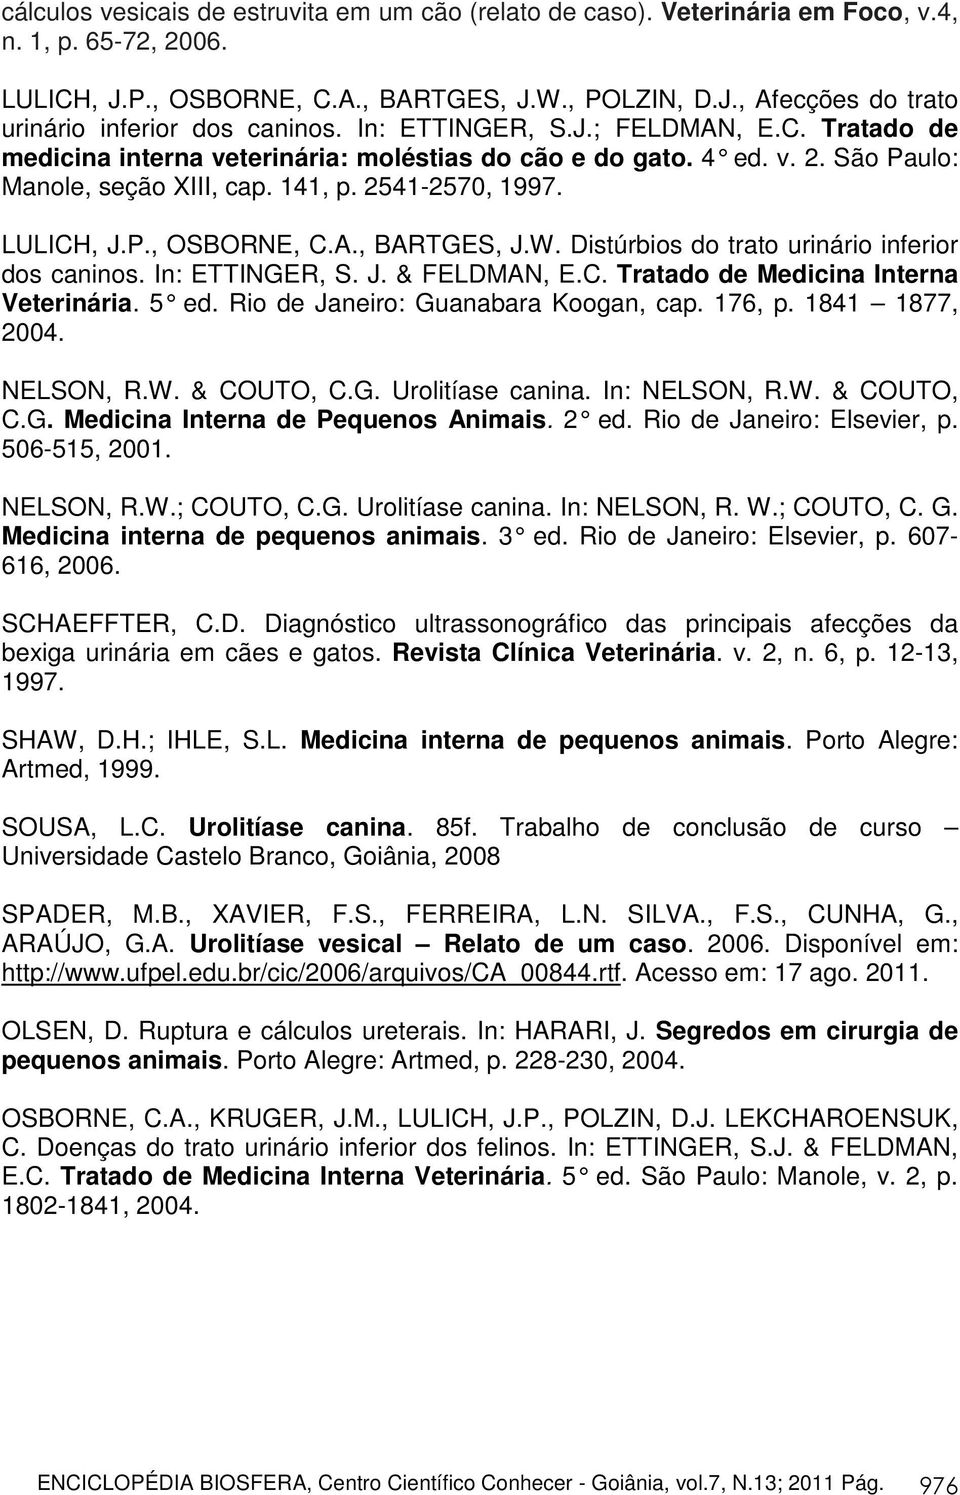 A., BARTGES, J.W. Distúrbios do trato urinário inferior dos caninos. In: ETTINGER, S. J. & FELDMAN, E.C. Tratado de Medicina Interna Veterinária. 5 ed. Rio de Janeiro: Guanabara Koogan, cap. 176, p.